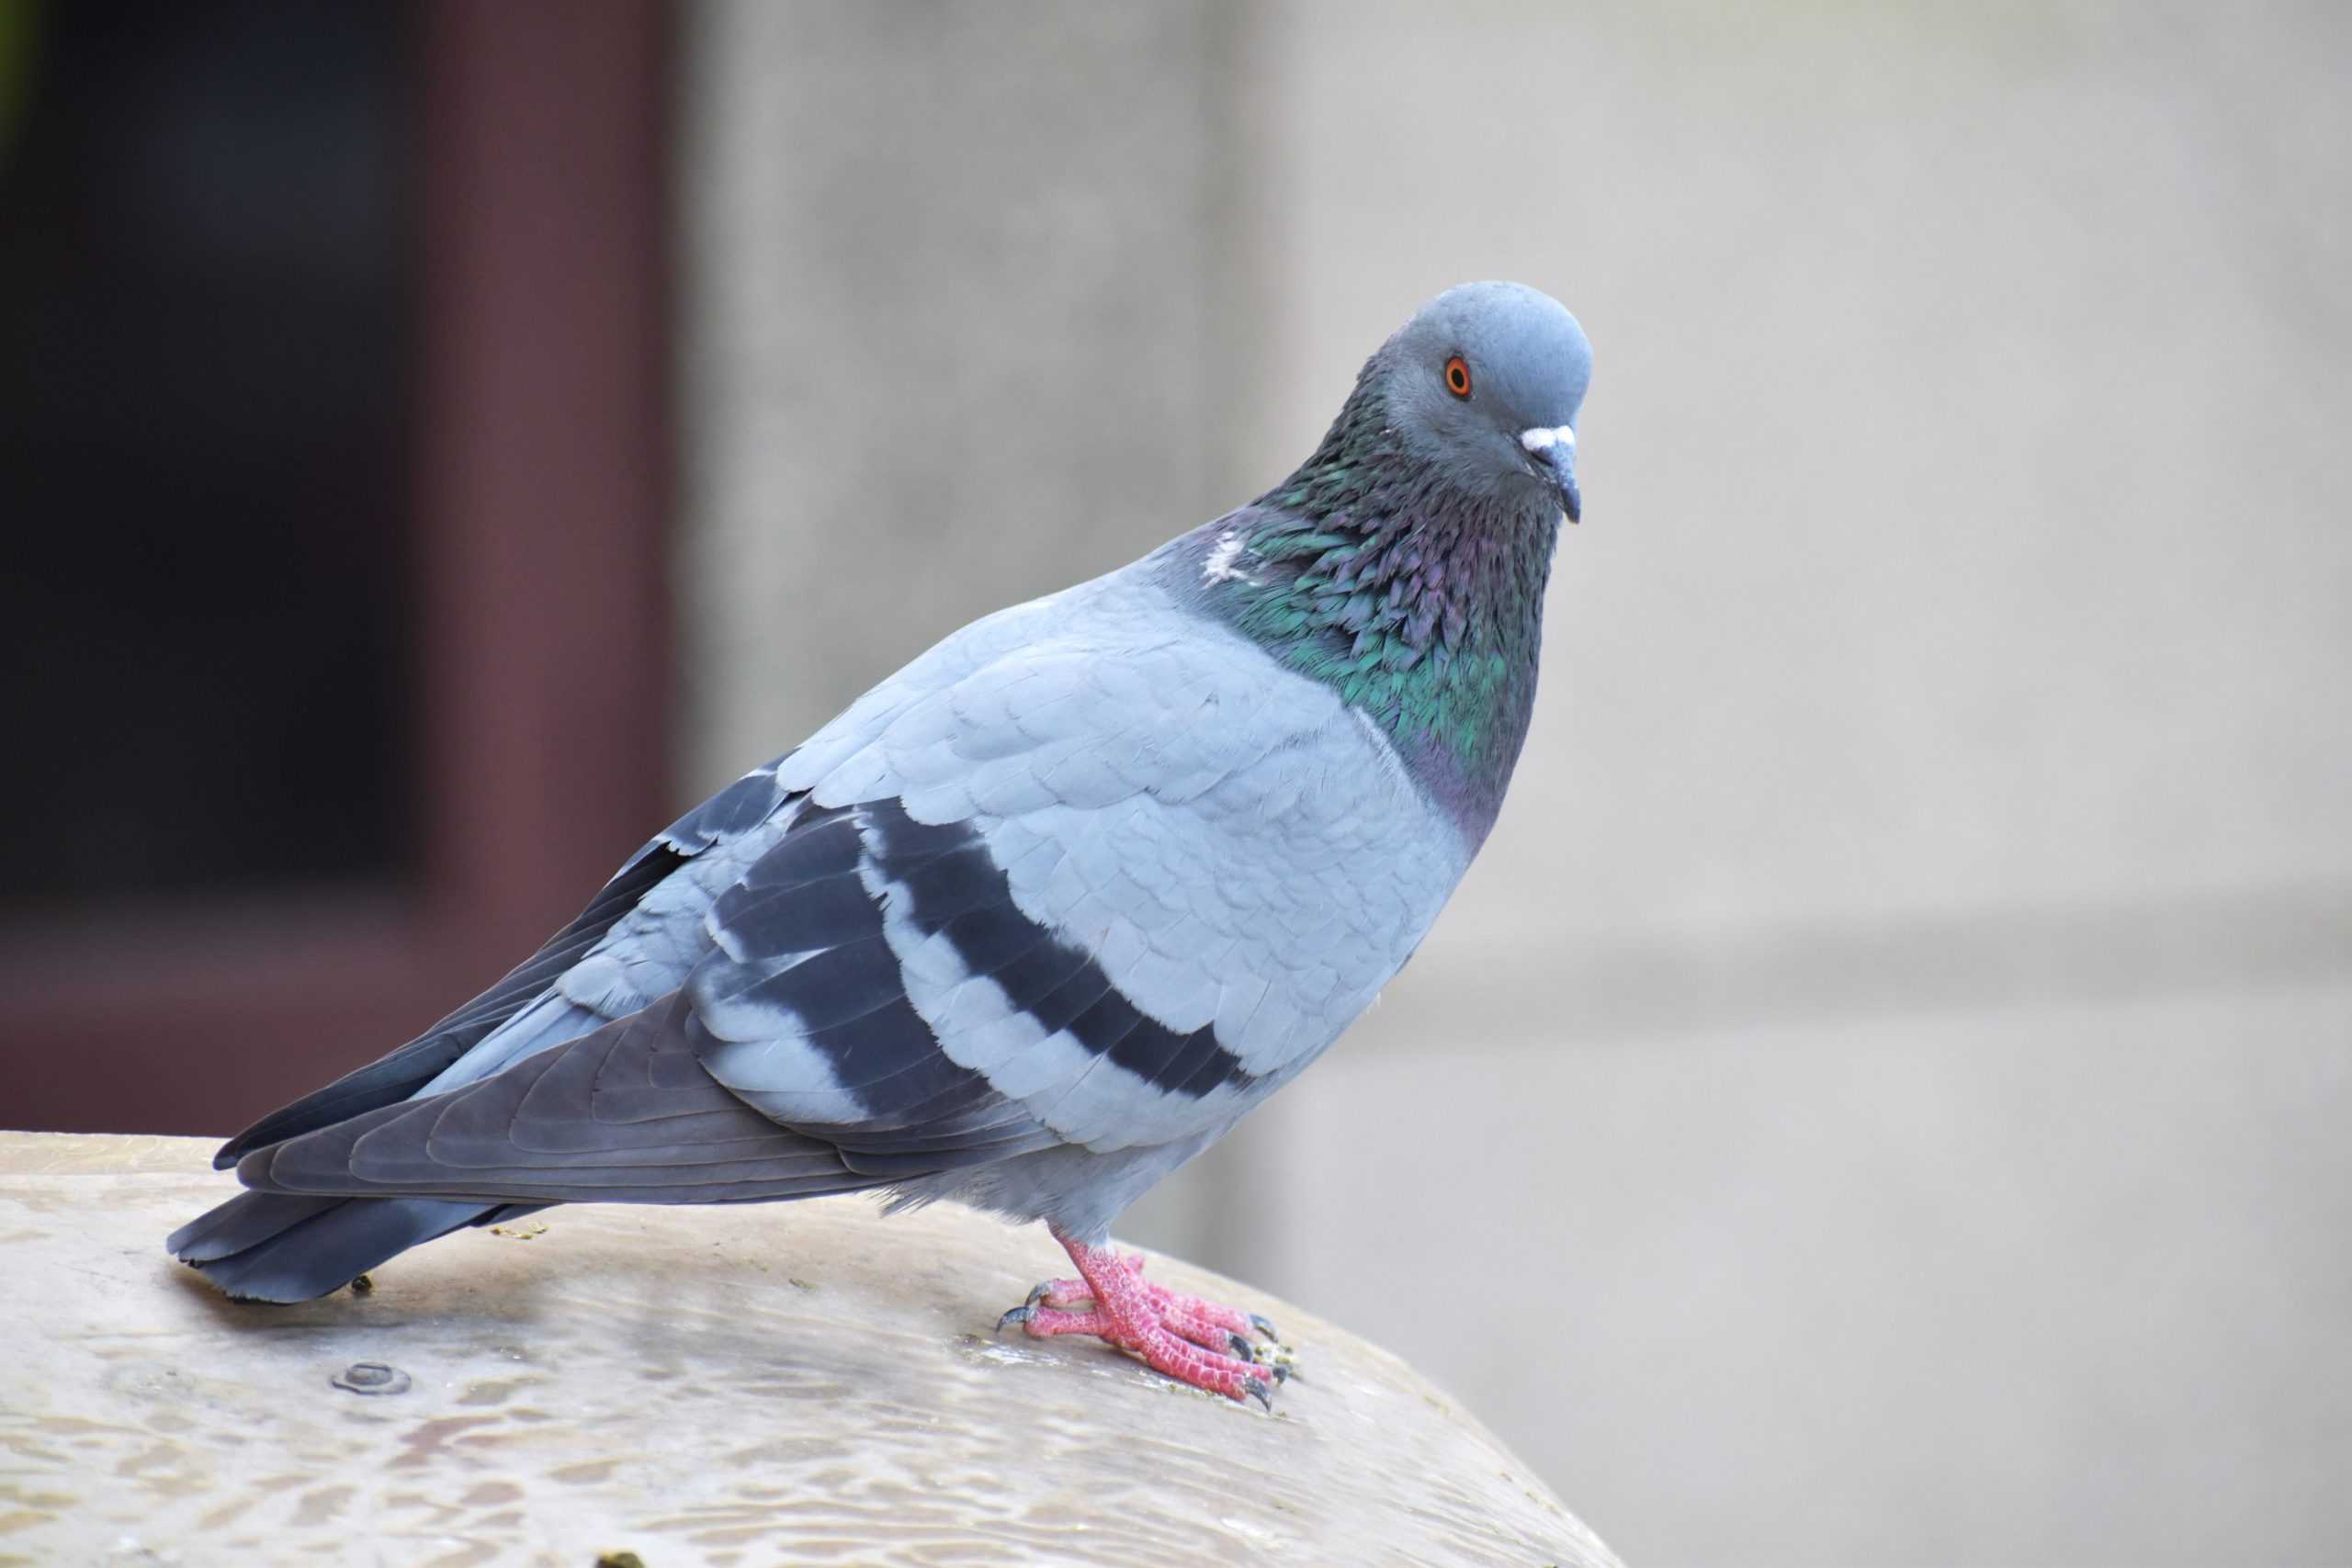 La culture de pigeon au menu du Mag-agropastoral